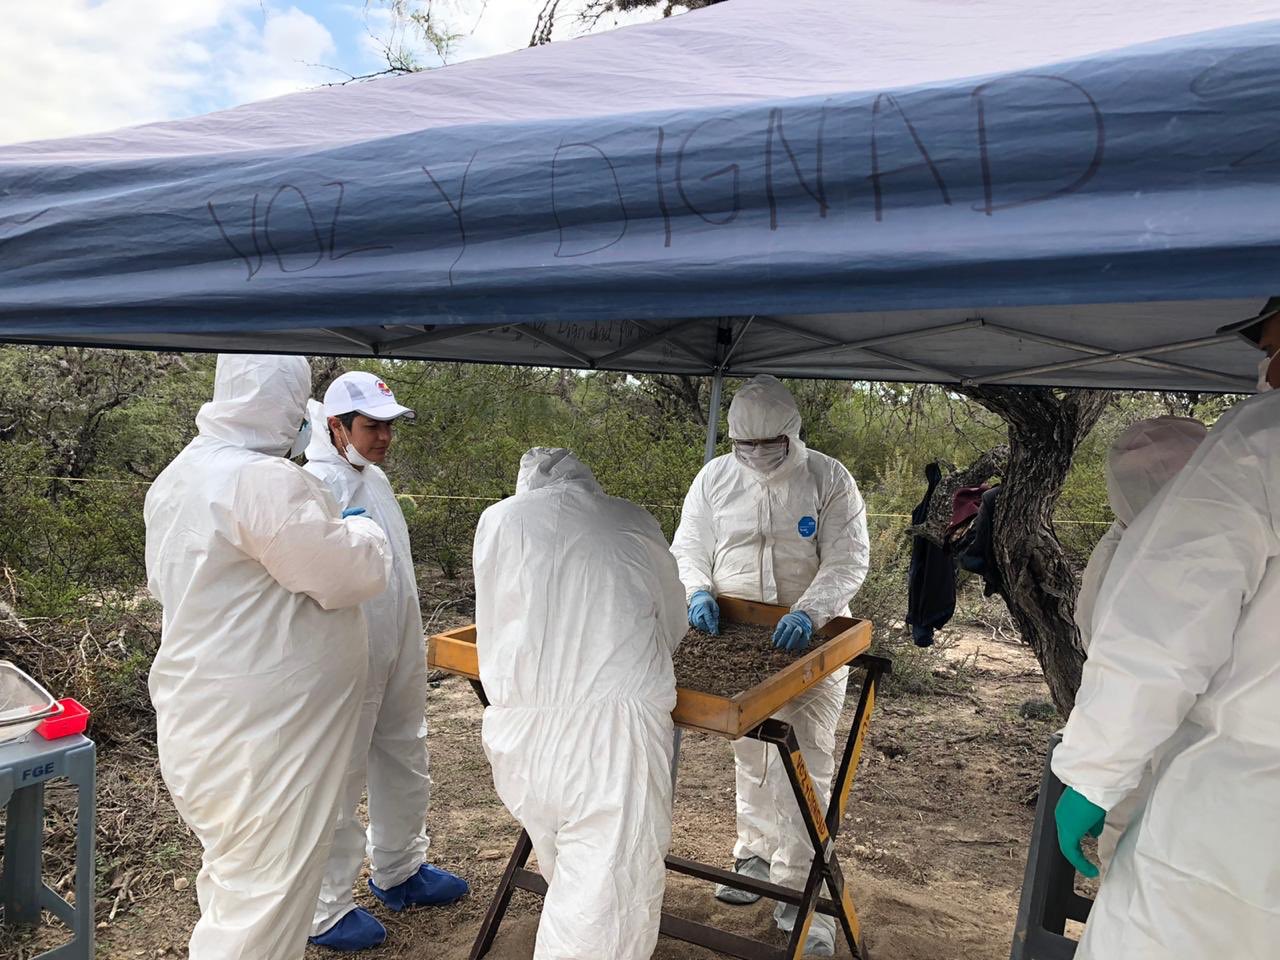 Personeros de la Comisión Nacional de Búsqueda de México examinan un terreno en la localidad de San Luís Potosí en busca de indicios de personas desaparecidas. Foto: Twitter / Busqueda_MX